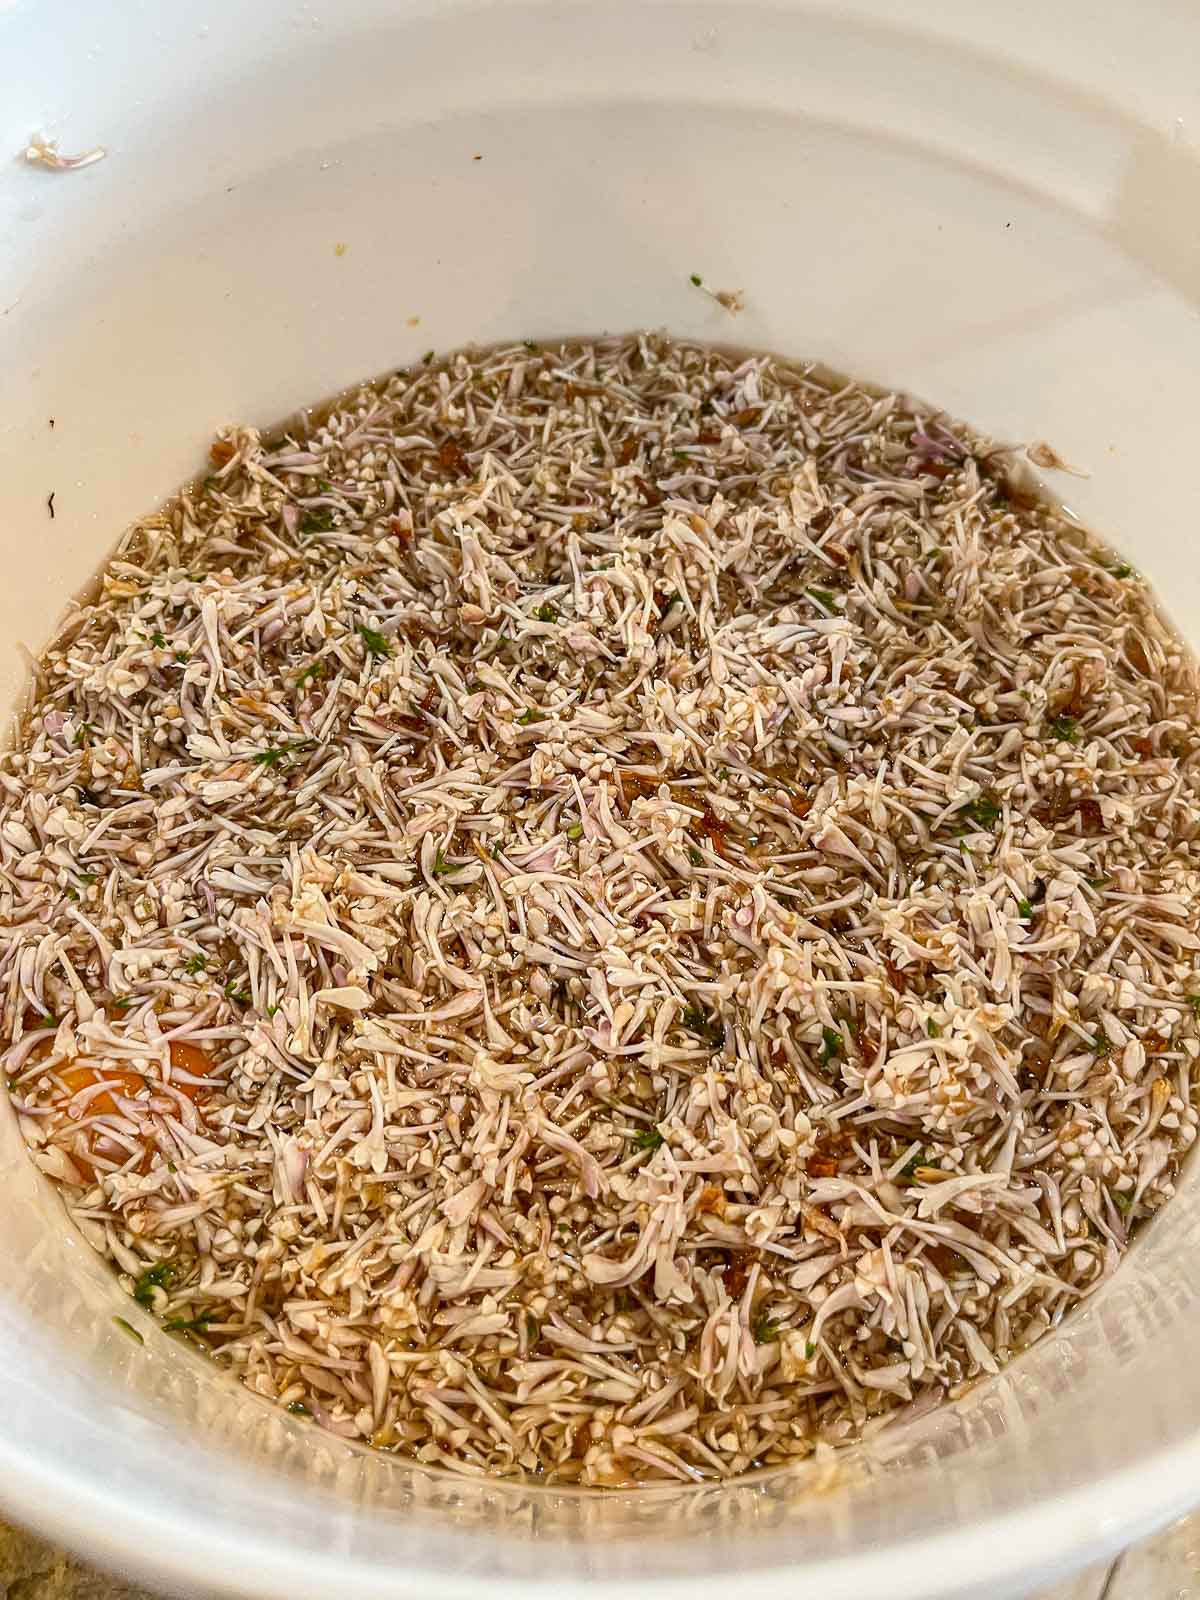 lilacs in a fermentor bucket